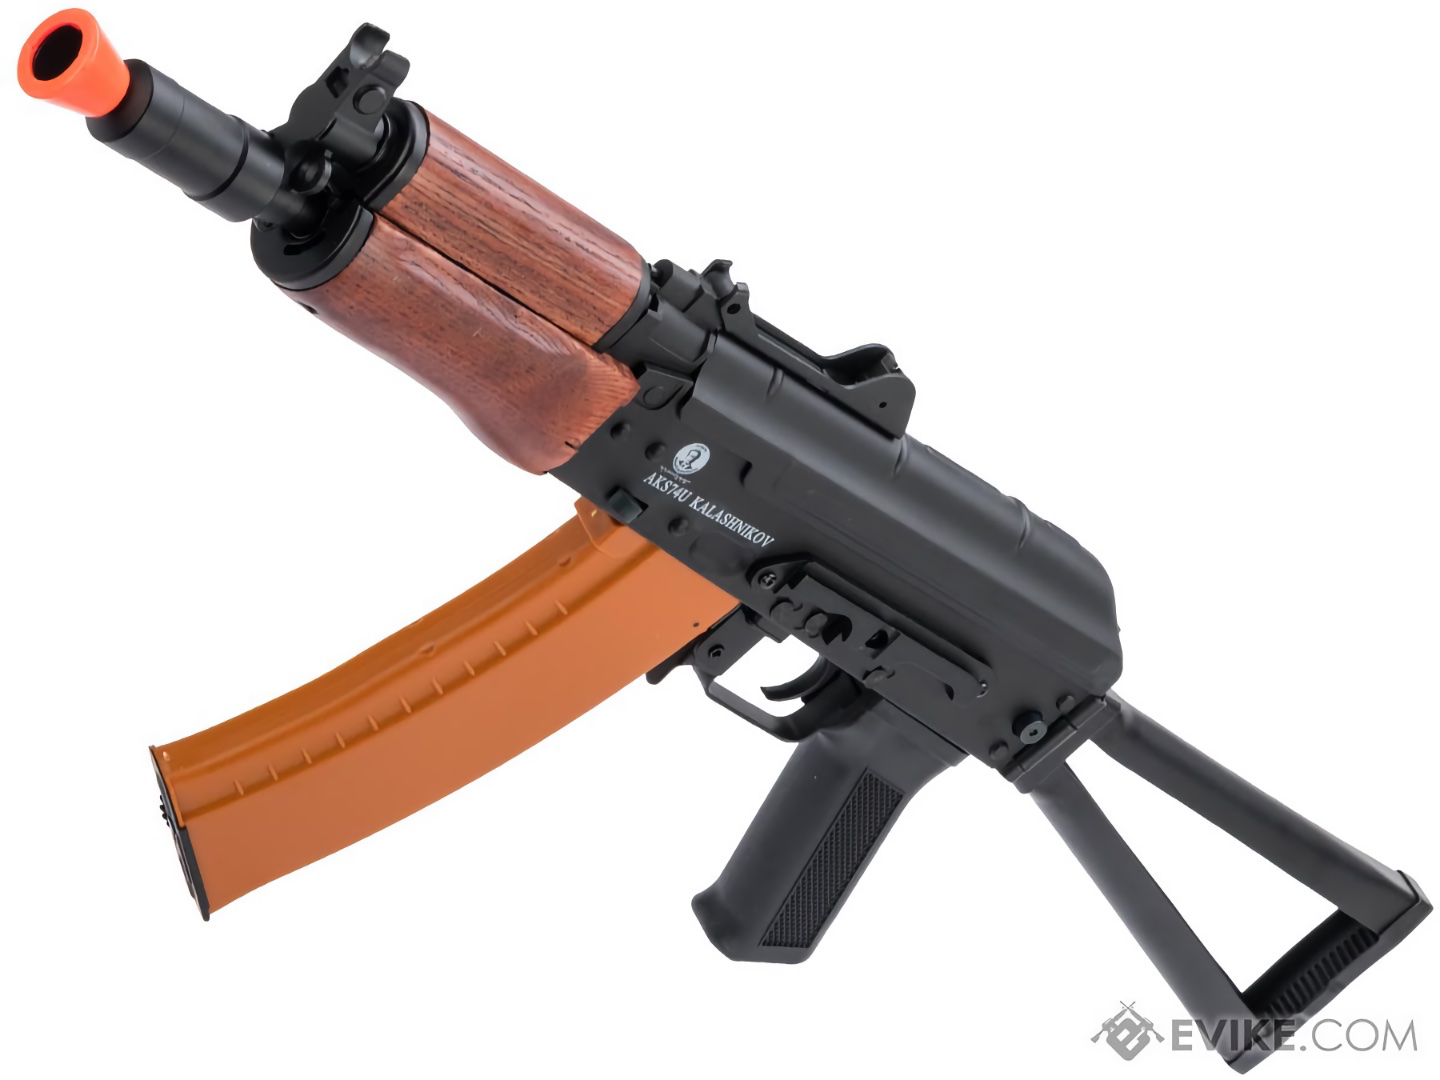 Softair's Kalashnikov